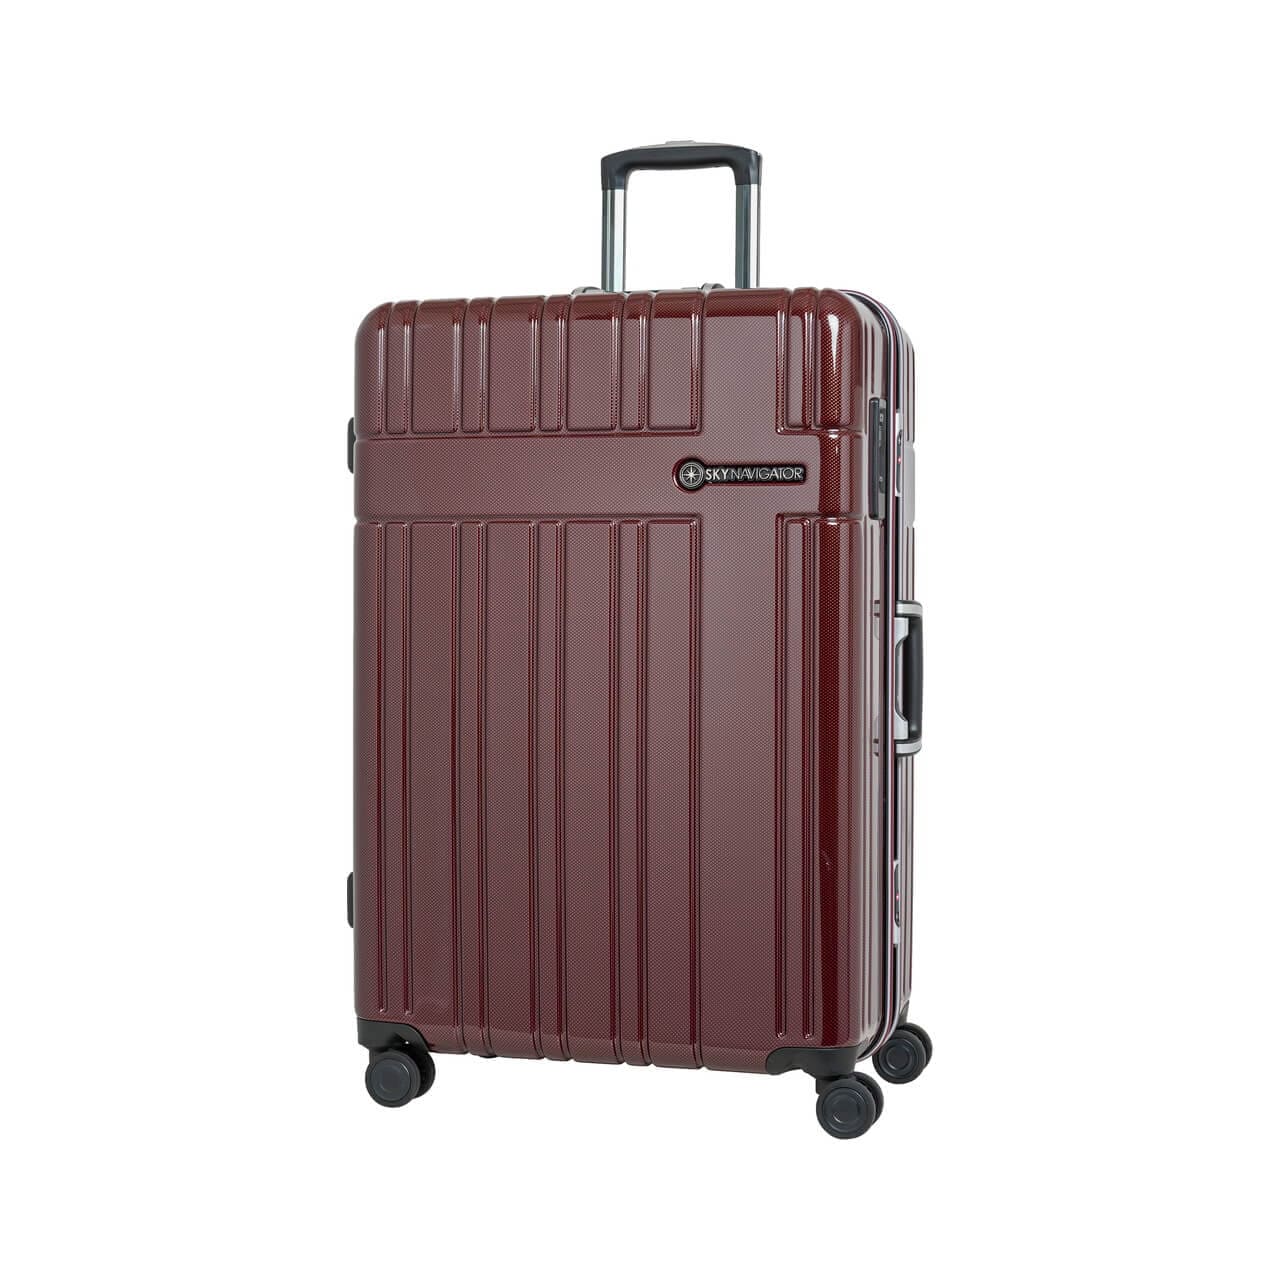 SKYNAVIGATORのスーツケースSK-0835-69のワインカーボンの正面振り画像